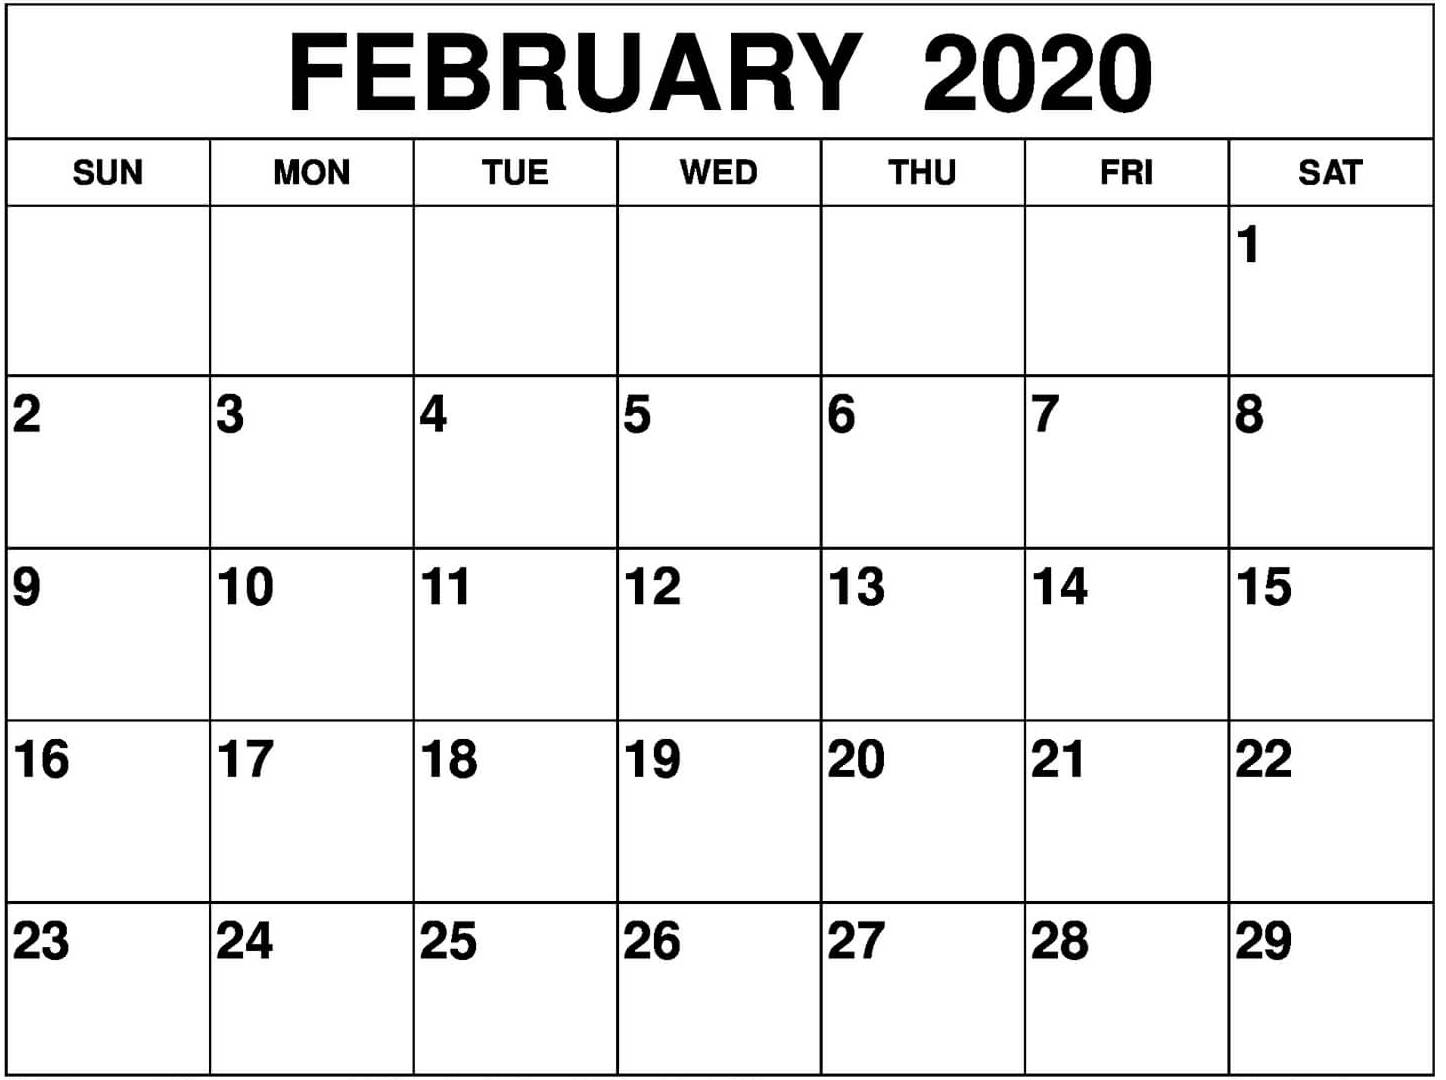 February 2020 Calendar Canada With Holidays Pdf - Set Your February 2020 Calendar Canada